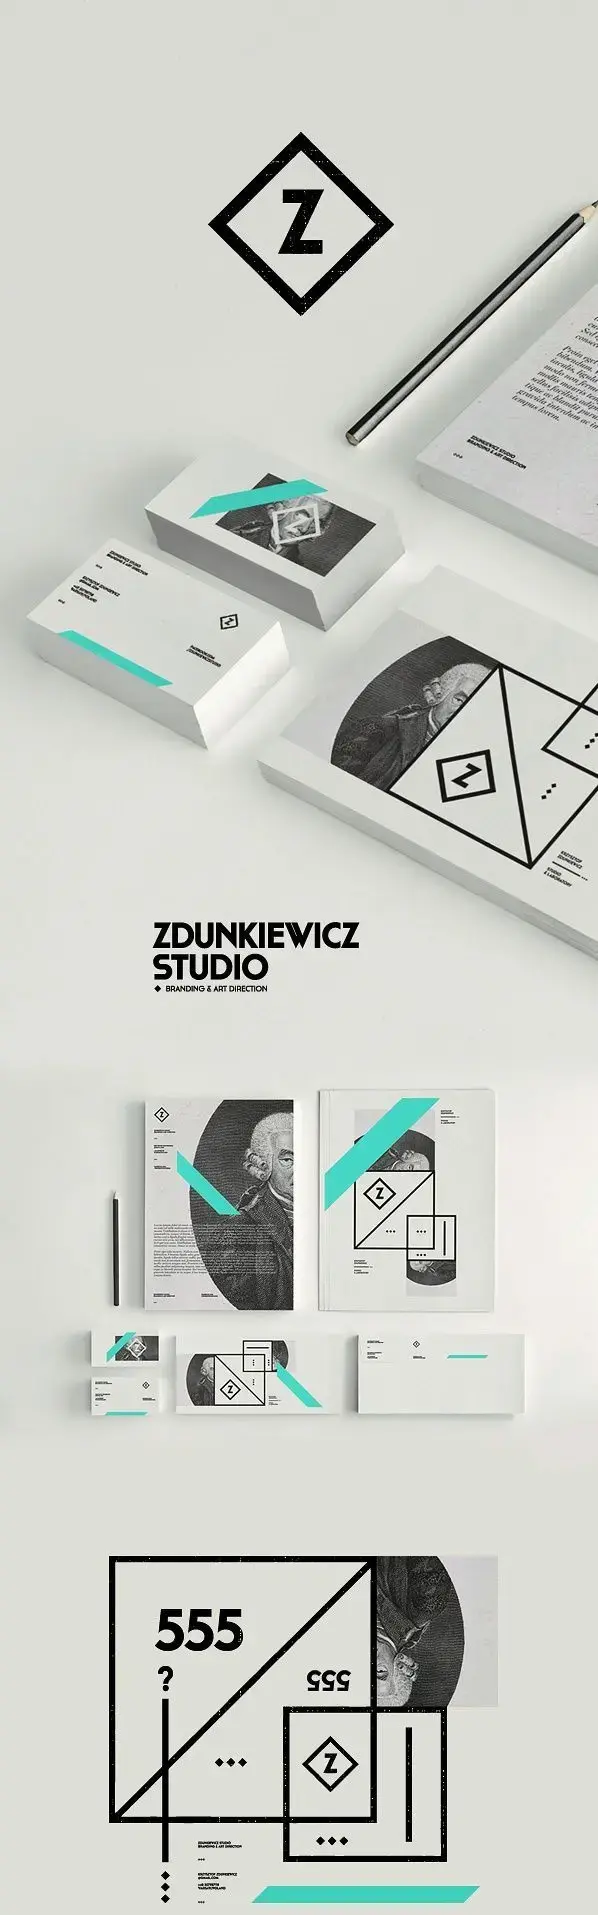 Zdunkiewicz studio partie 1